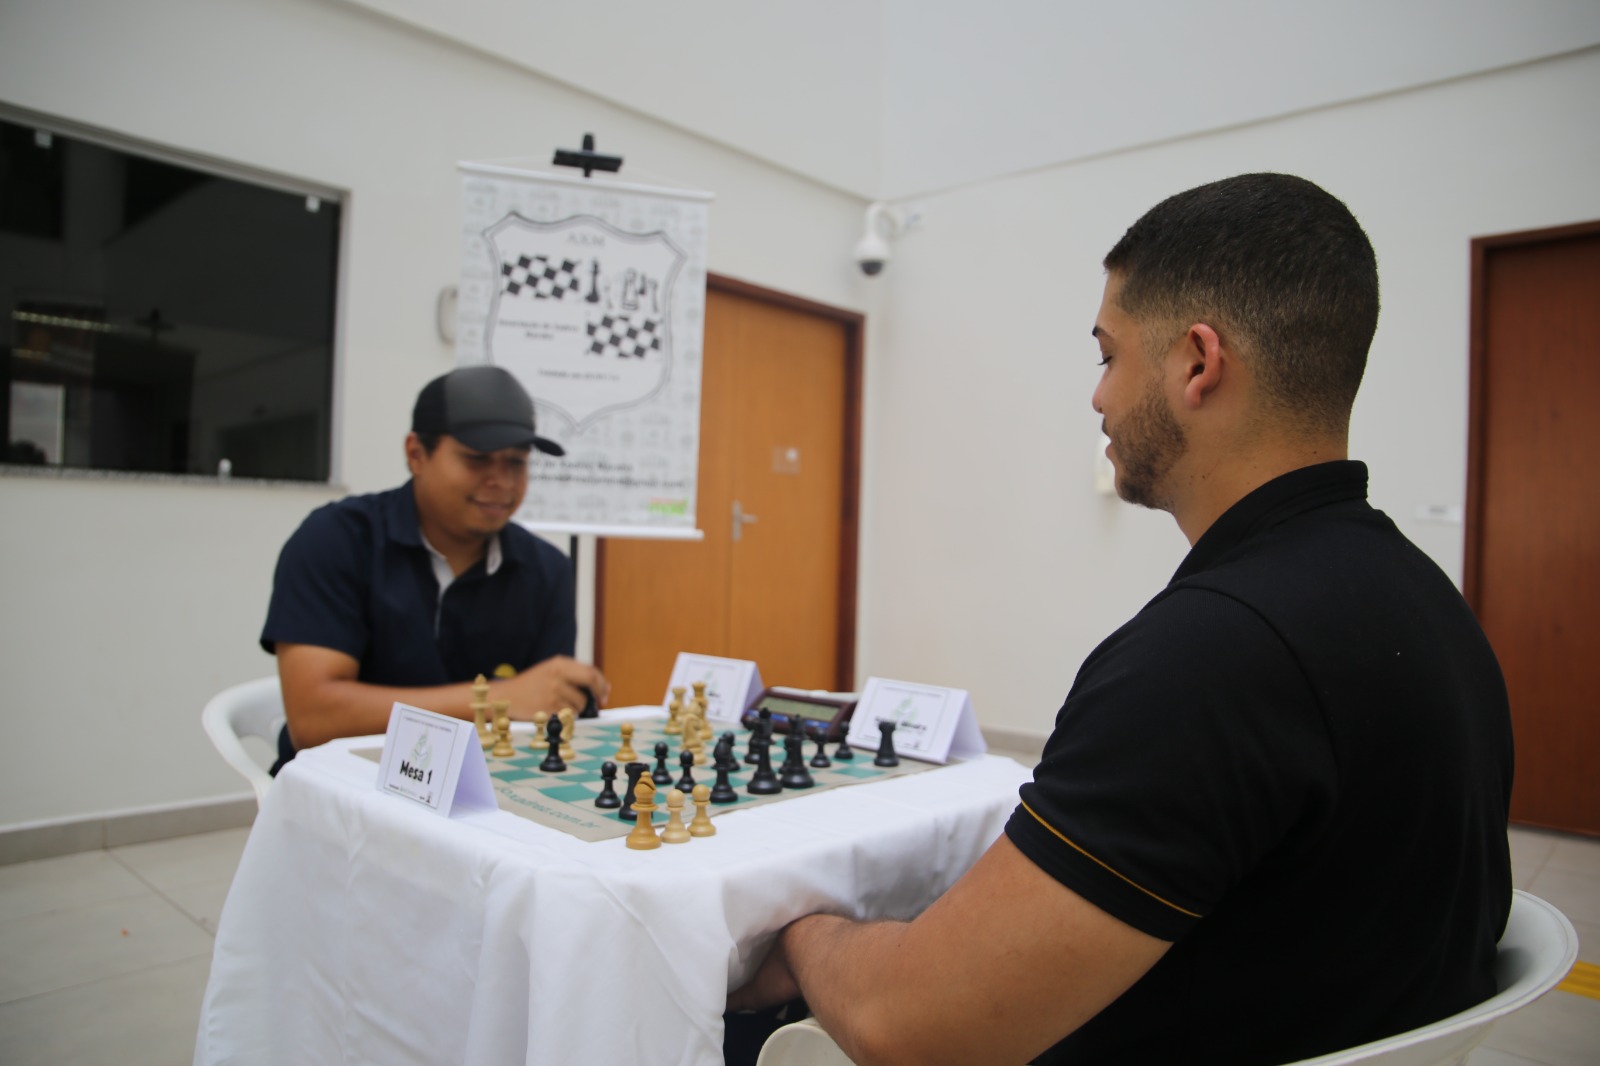 Xadrez - 10 benefícios do xadrez para a saúde mental # 48 